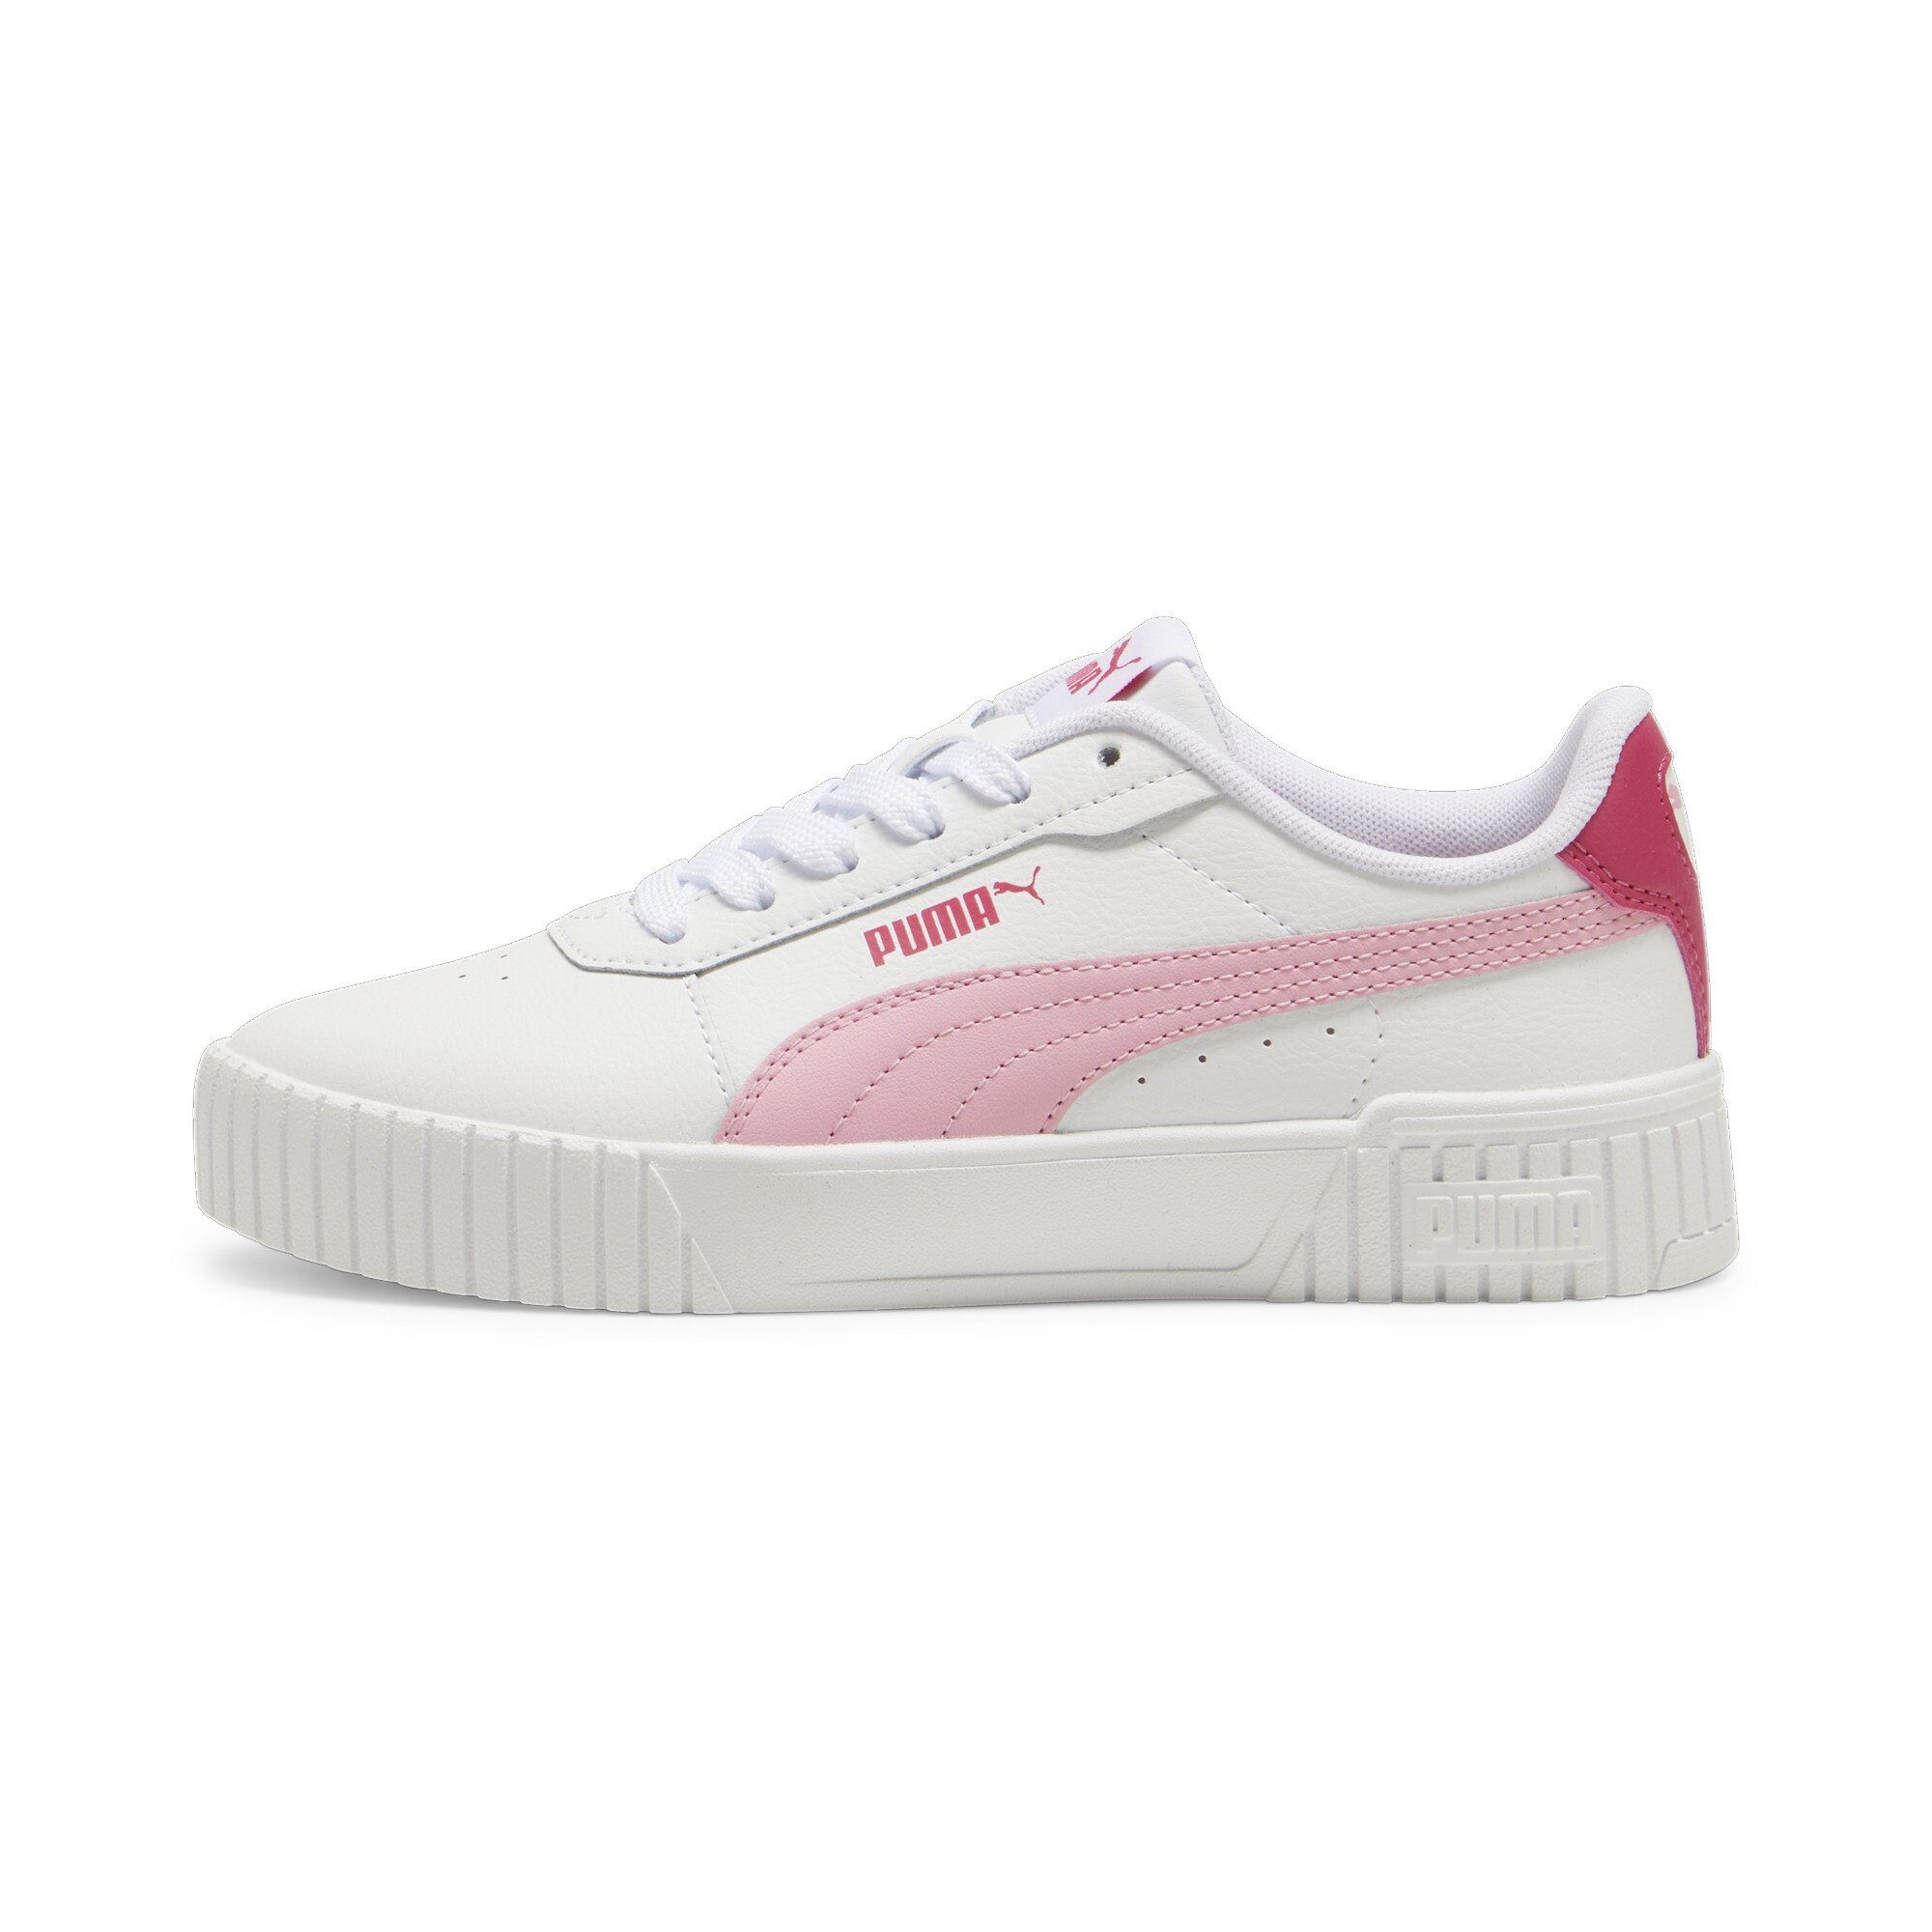 PUMA Carina 2.0 Sneakers Jugendliche Pink Lilac White Sneaker